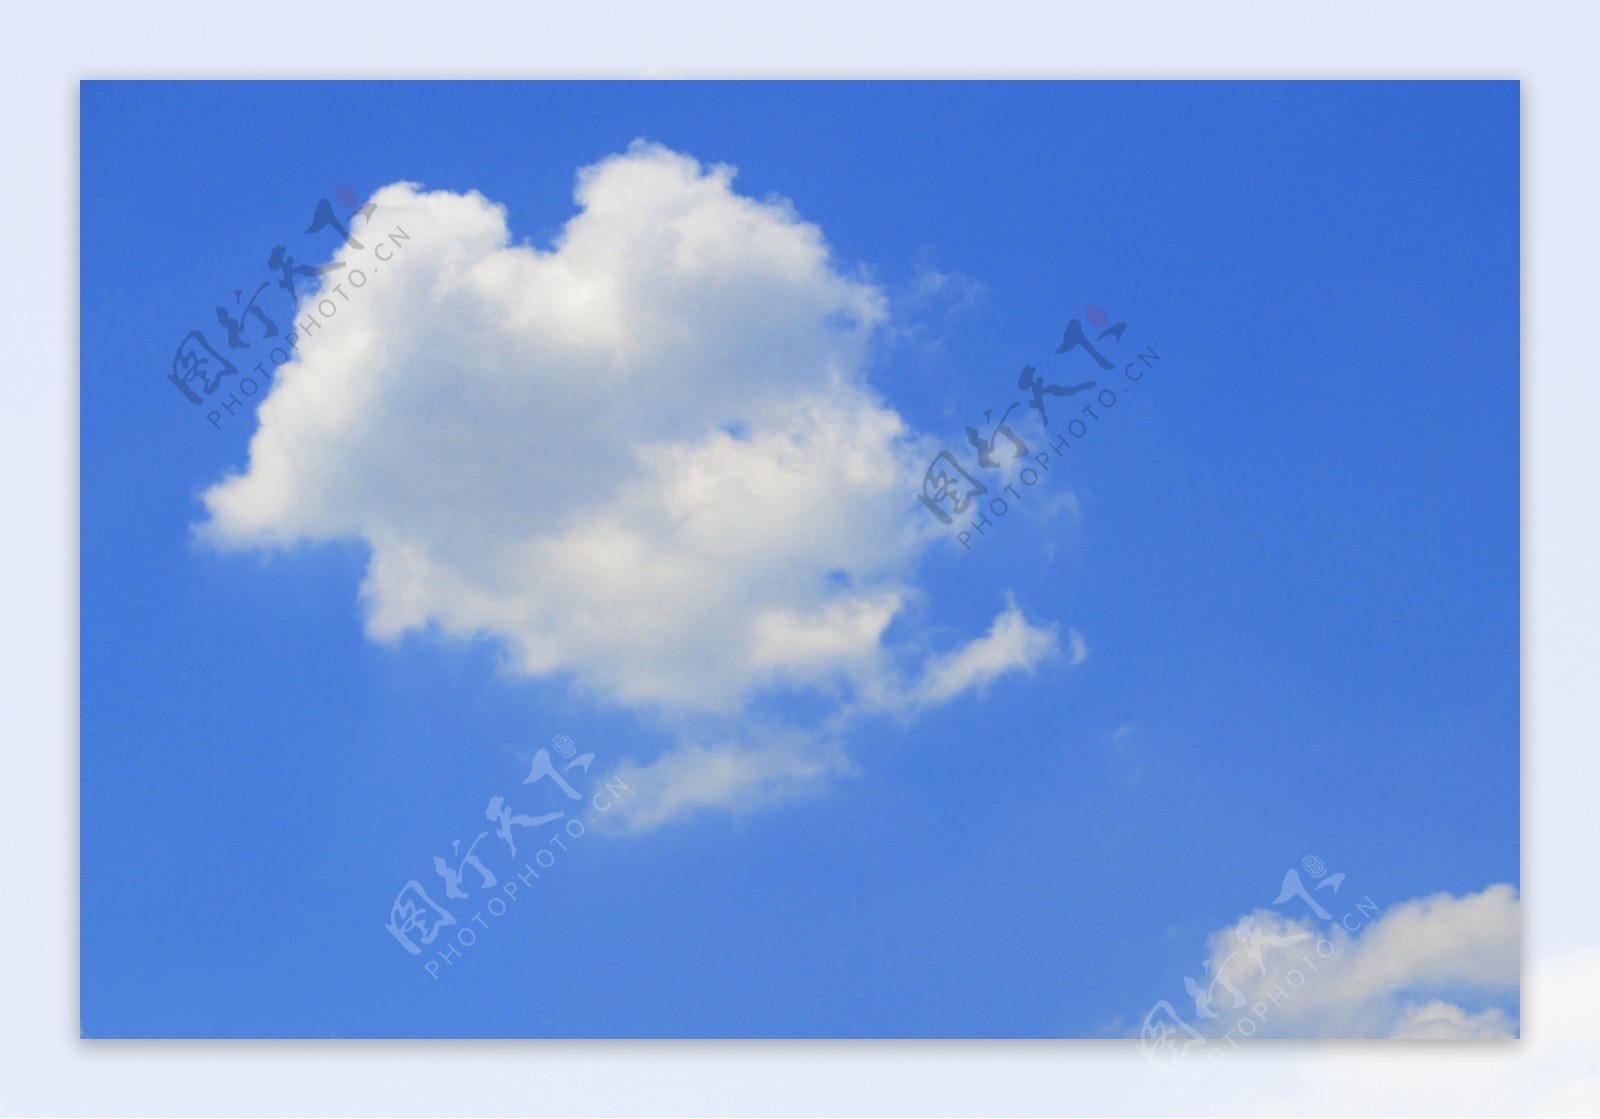 图片素材 : 地平线, 天空, 阳光, 大气层, 白天, 积云, 气象现象, 地球大气 3264x1836 - - 58476 - 素材中国 ...